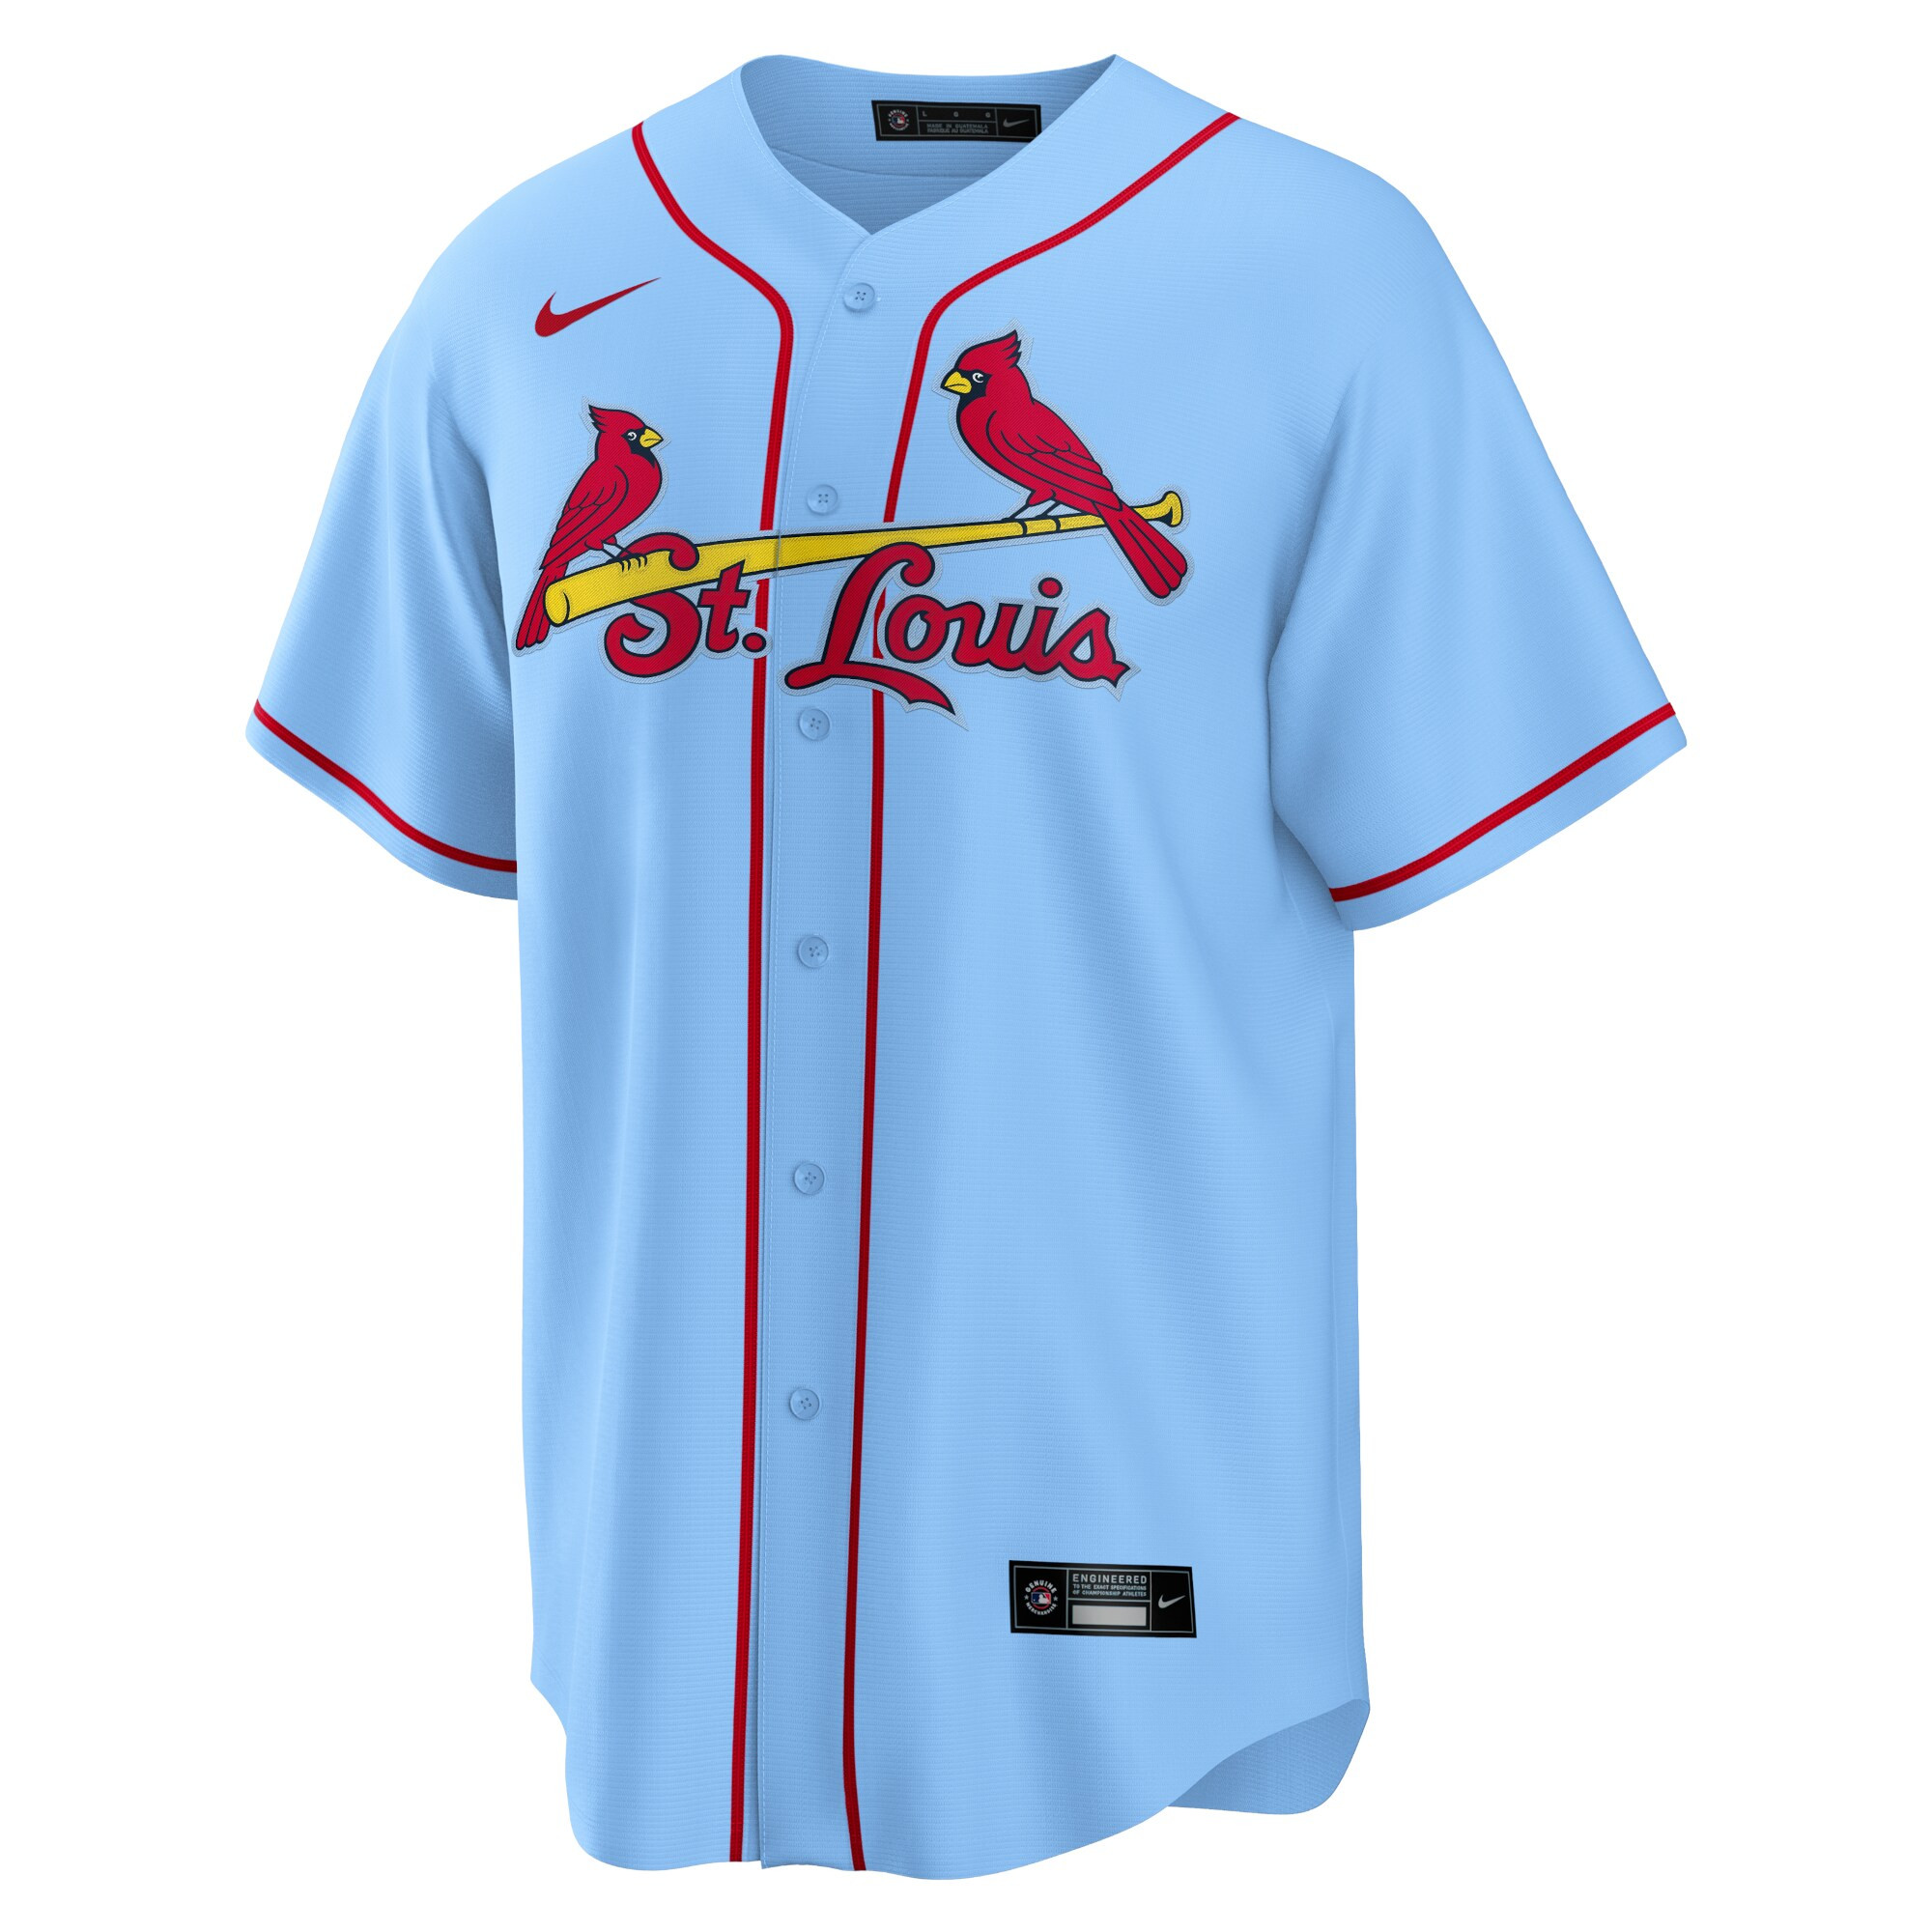 Men's Paul Goldschmidt St. Louis Cardinals Alternate Replica Player Name Jersey - Light Blue